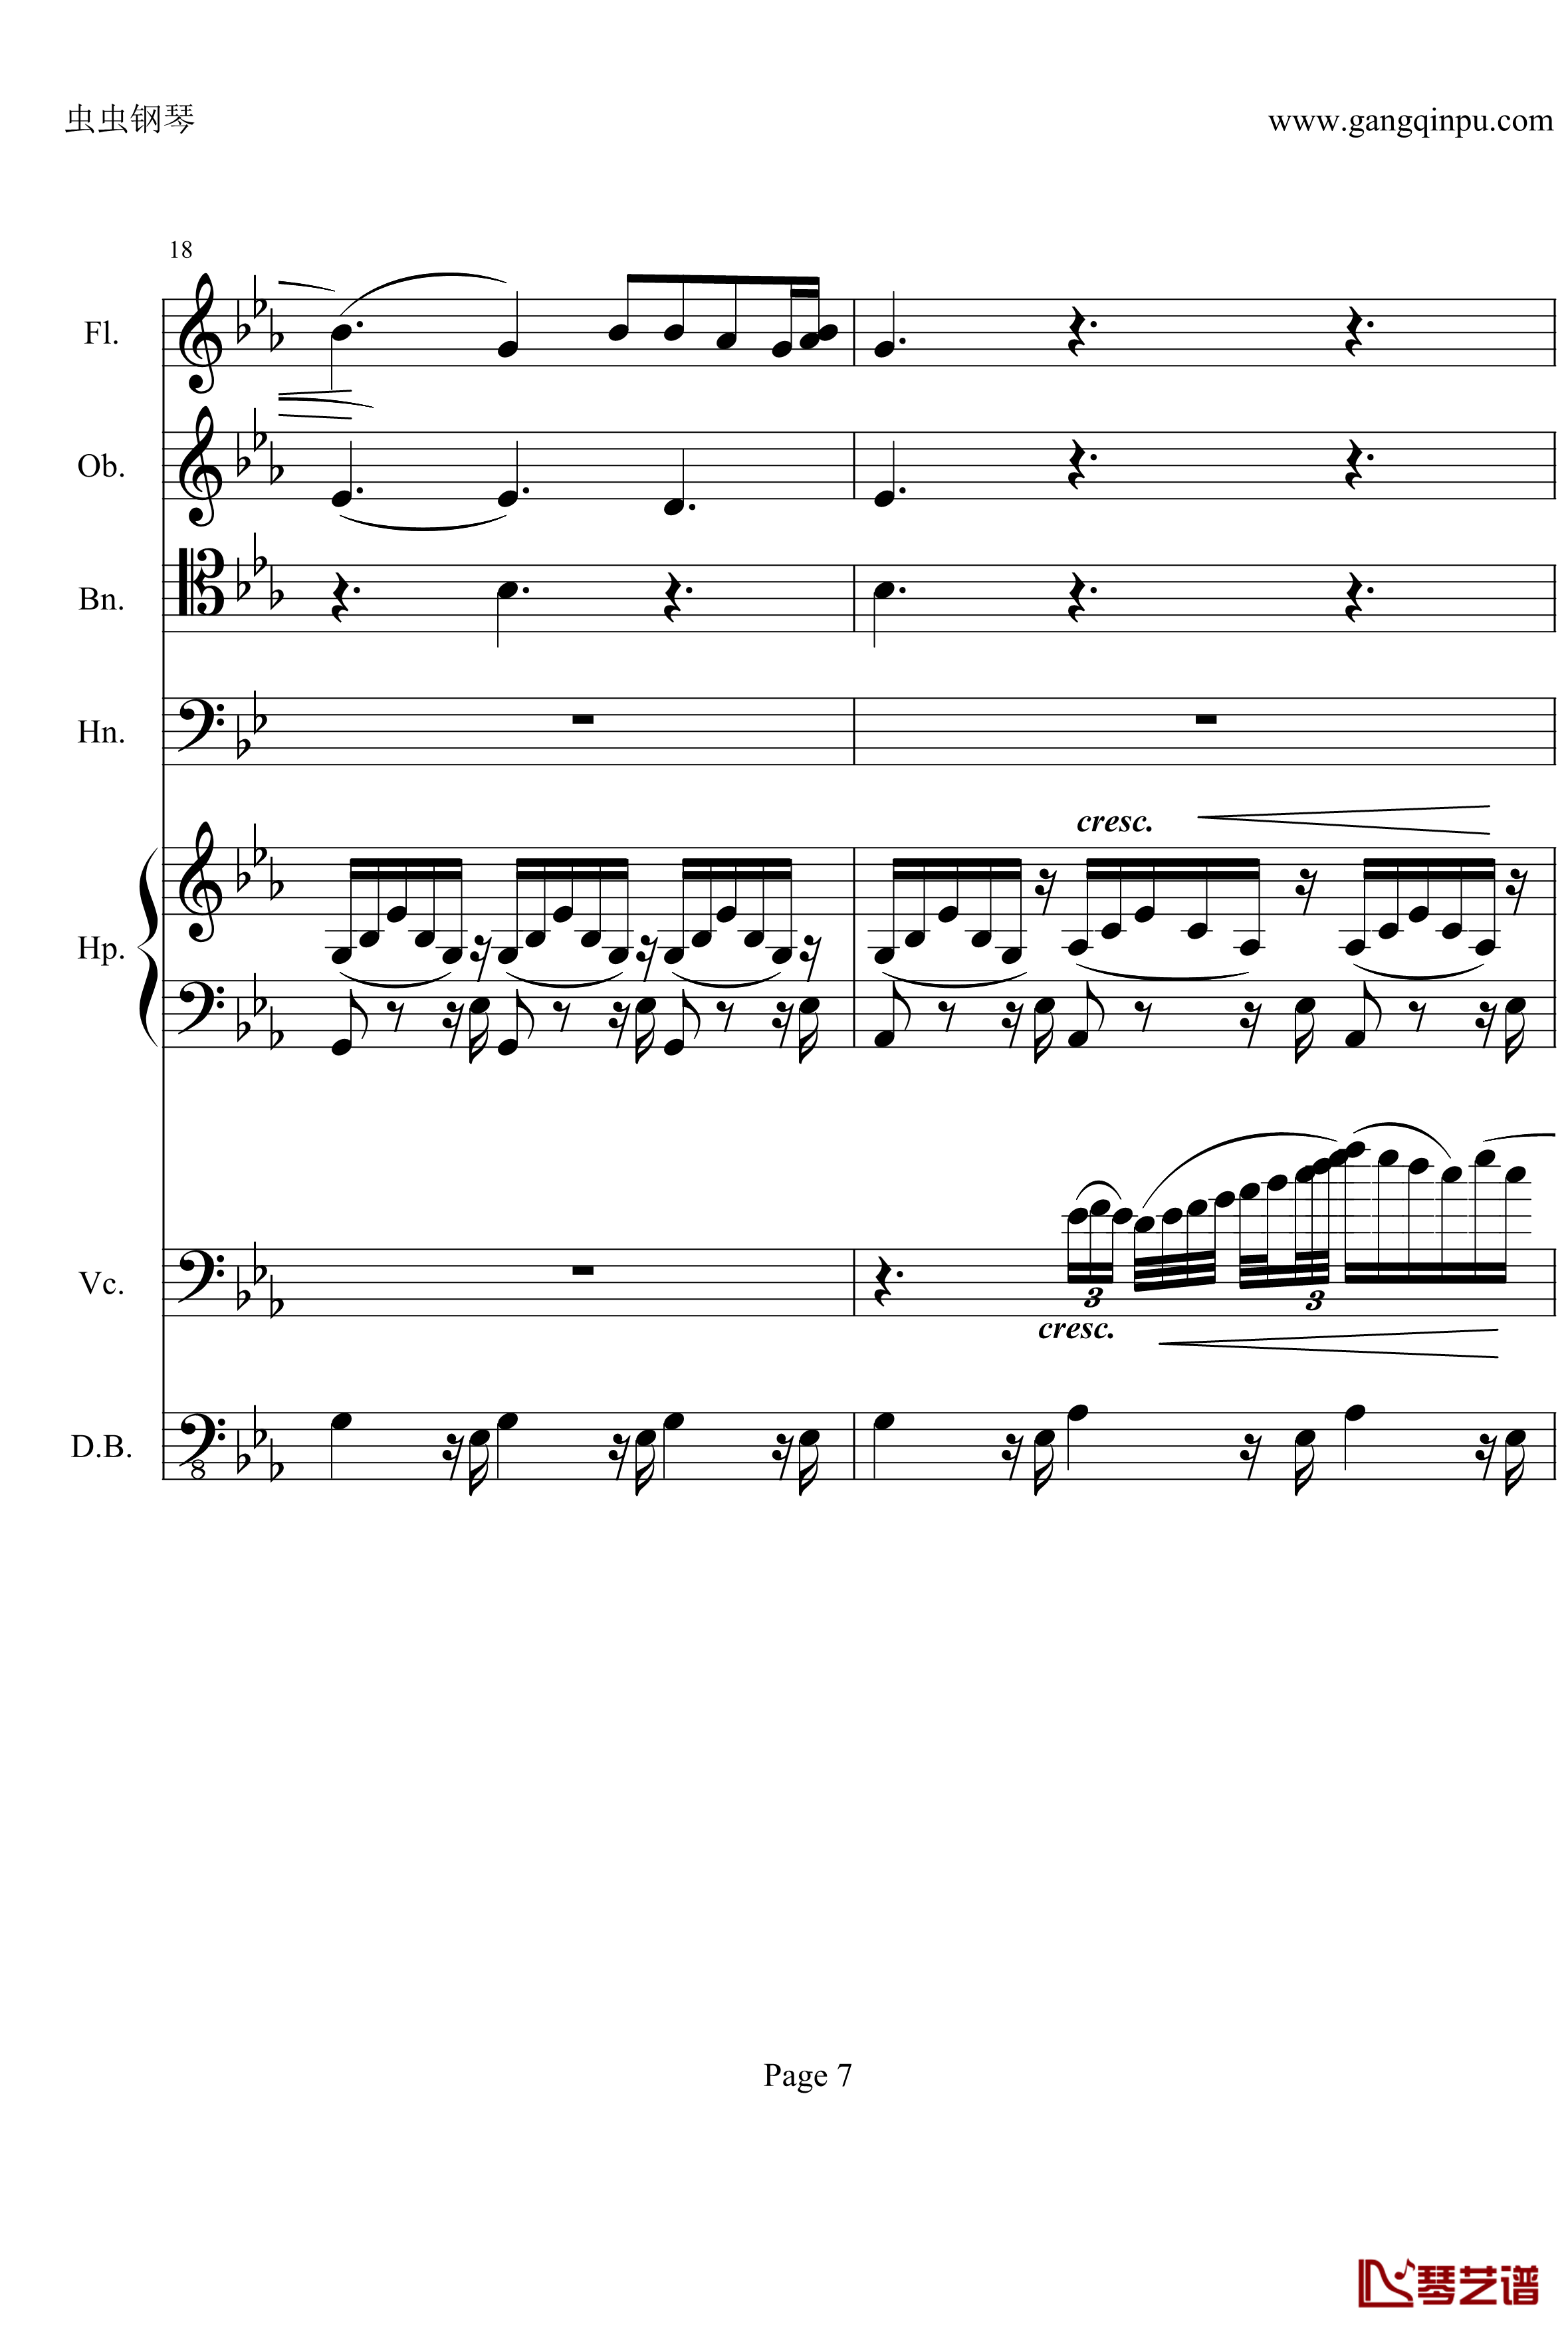 奏鸣曲之交响钢琴谱-第25首-Ⅱ-贝多芬-beethoven7